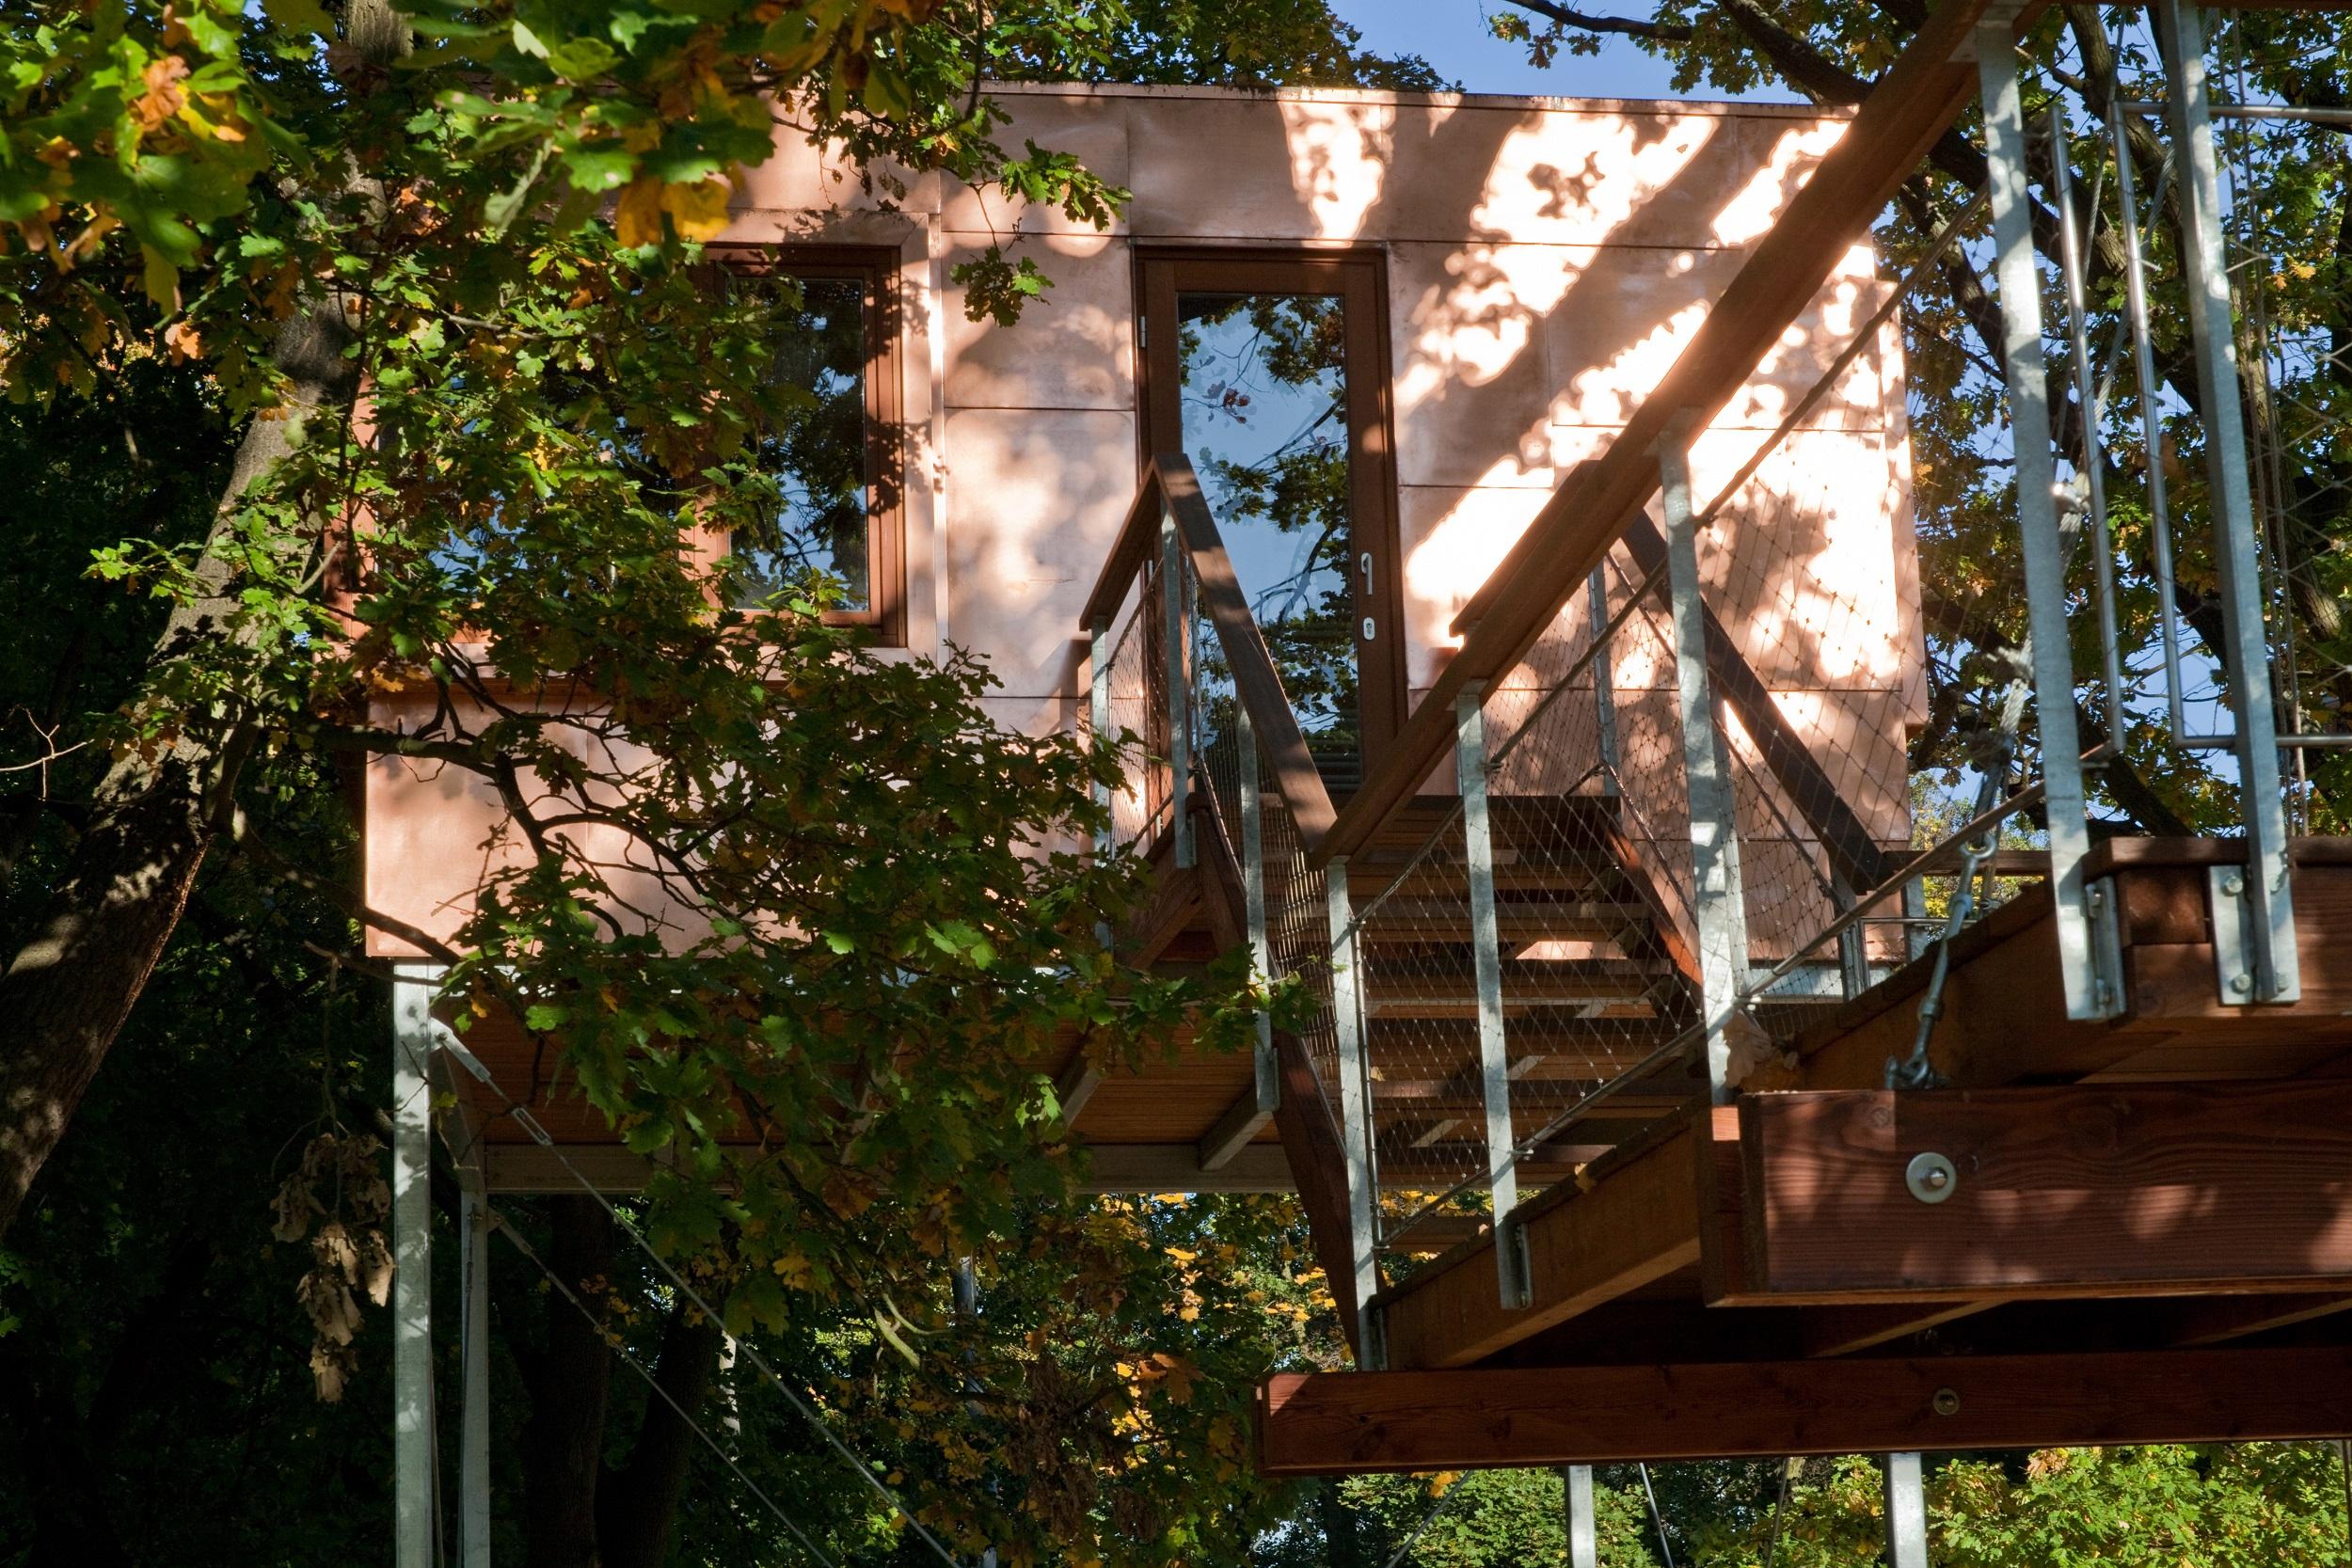 Kupfer Kubus inmitten von Baumkronen - nicht beschriften #baumhaus #stelzenhaus ©baumraum / Markus Bollen